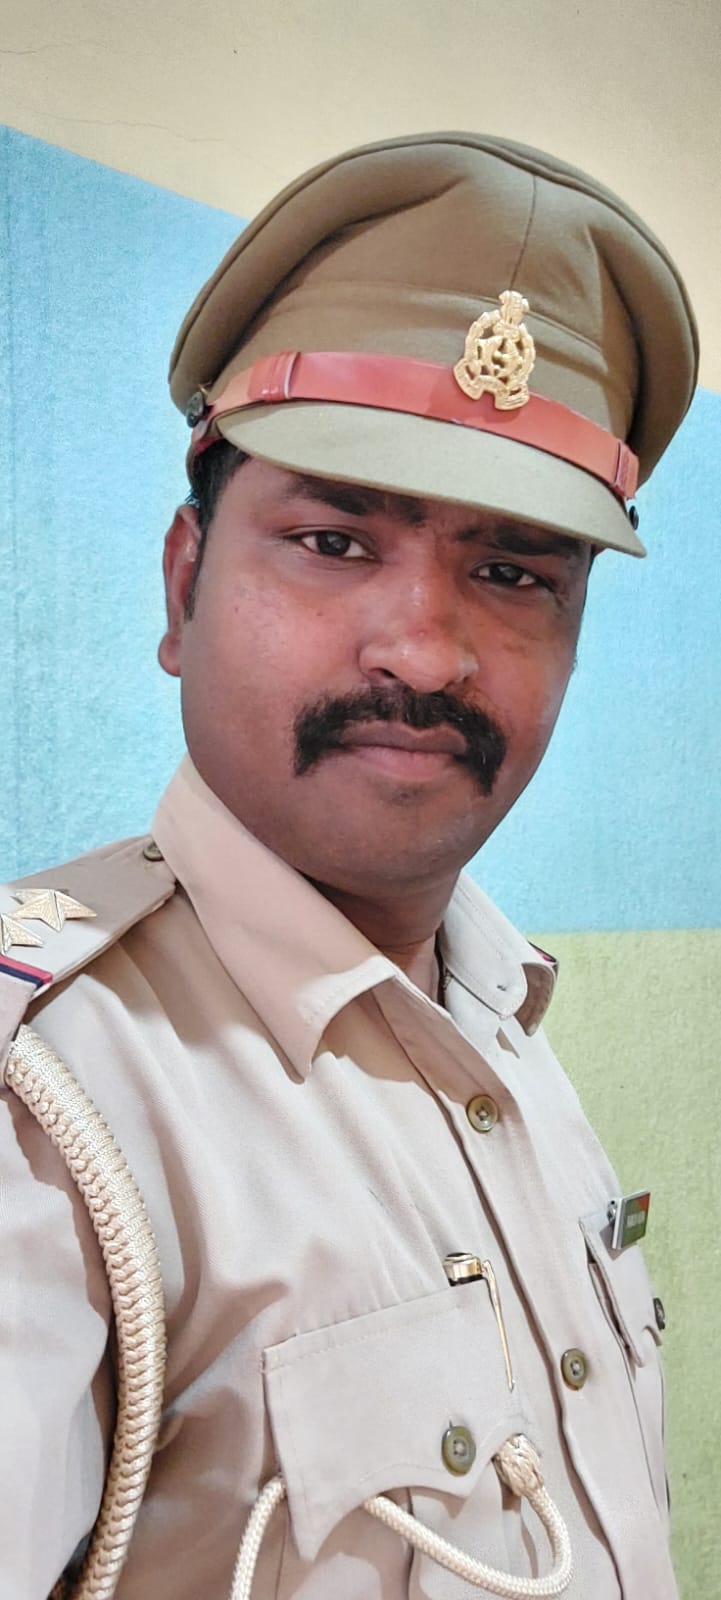 बलरामपुर पुलिस के उपनिरीक्षक अनिल कुमार गौतम के सराहनीय कार्य की जनता कर रही प्रशंसा